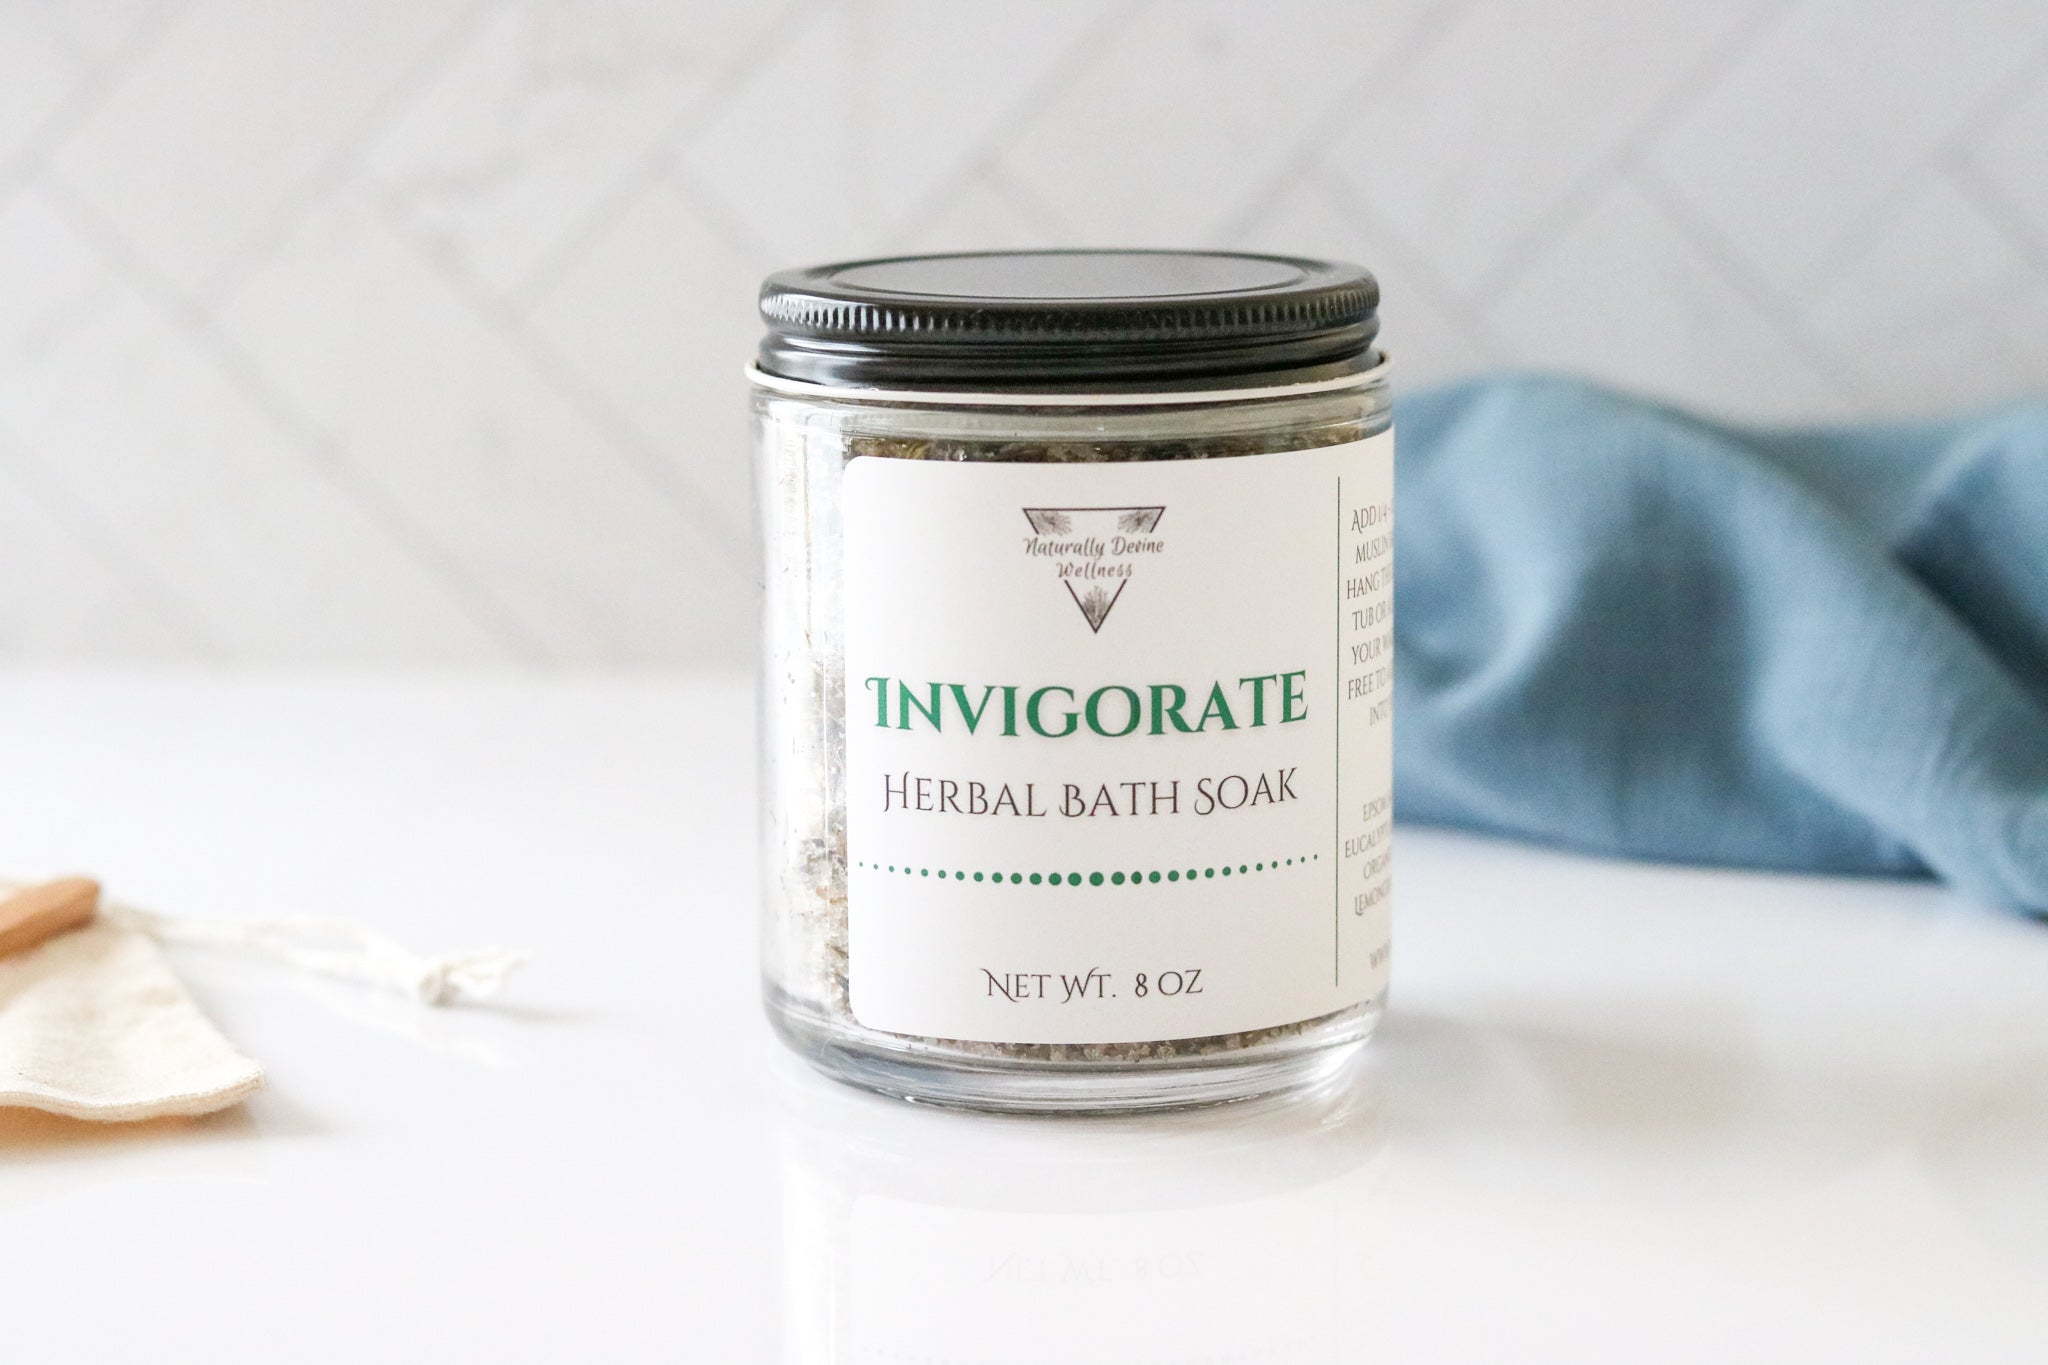 Invigorate Herbal Bath Soak - Naturally Devine Wellness